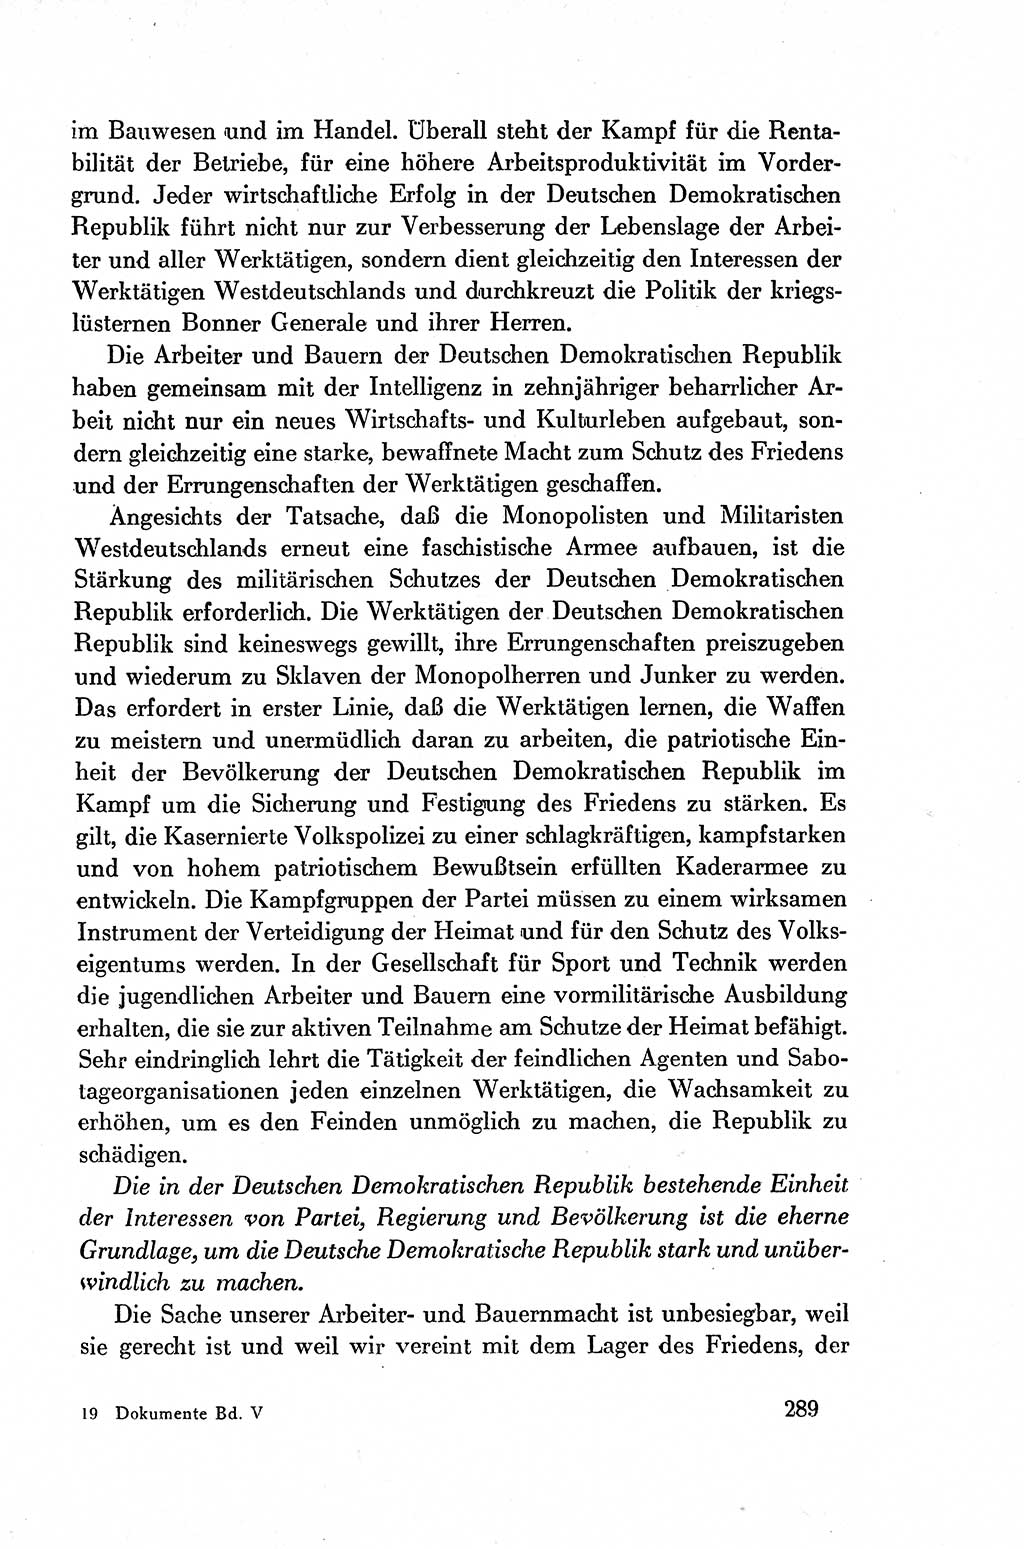 Dokumente der Sozialistischen Einheitspartei Deutschlands (SED) [Deutsche Demokratische Republik (DDR)] 1954-1955, Seite 289 (Dok. SED DDR 1954-1955, S. 289)